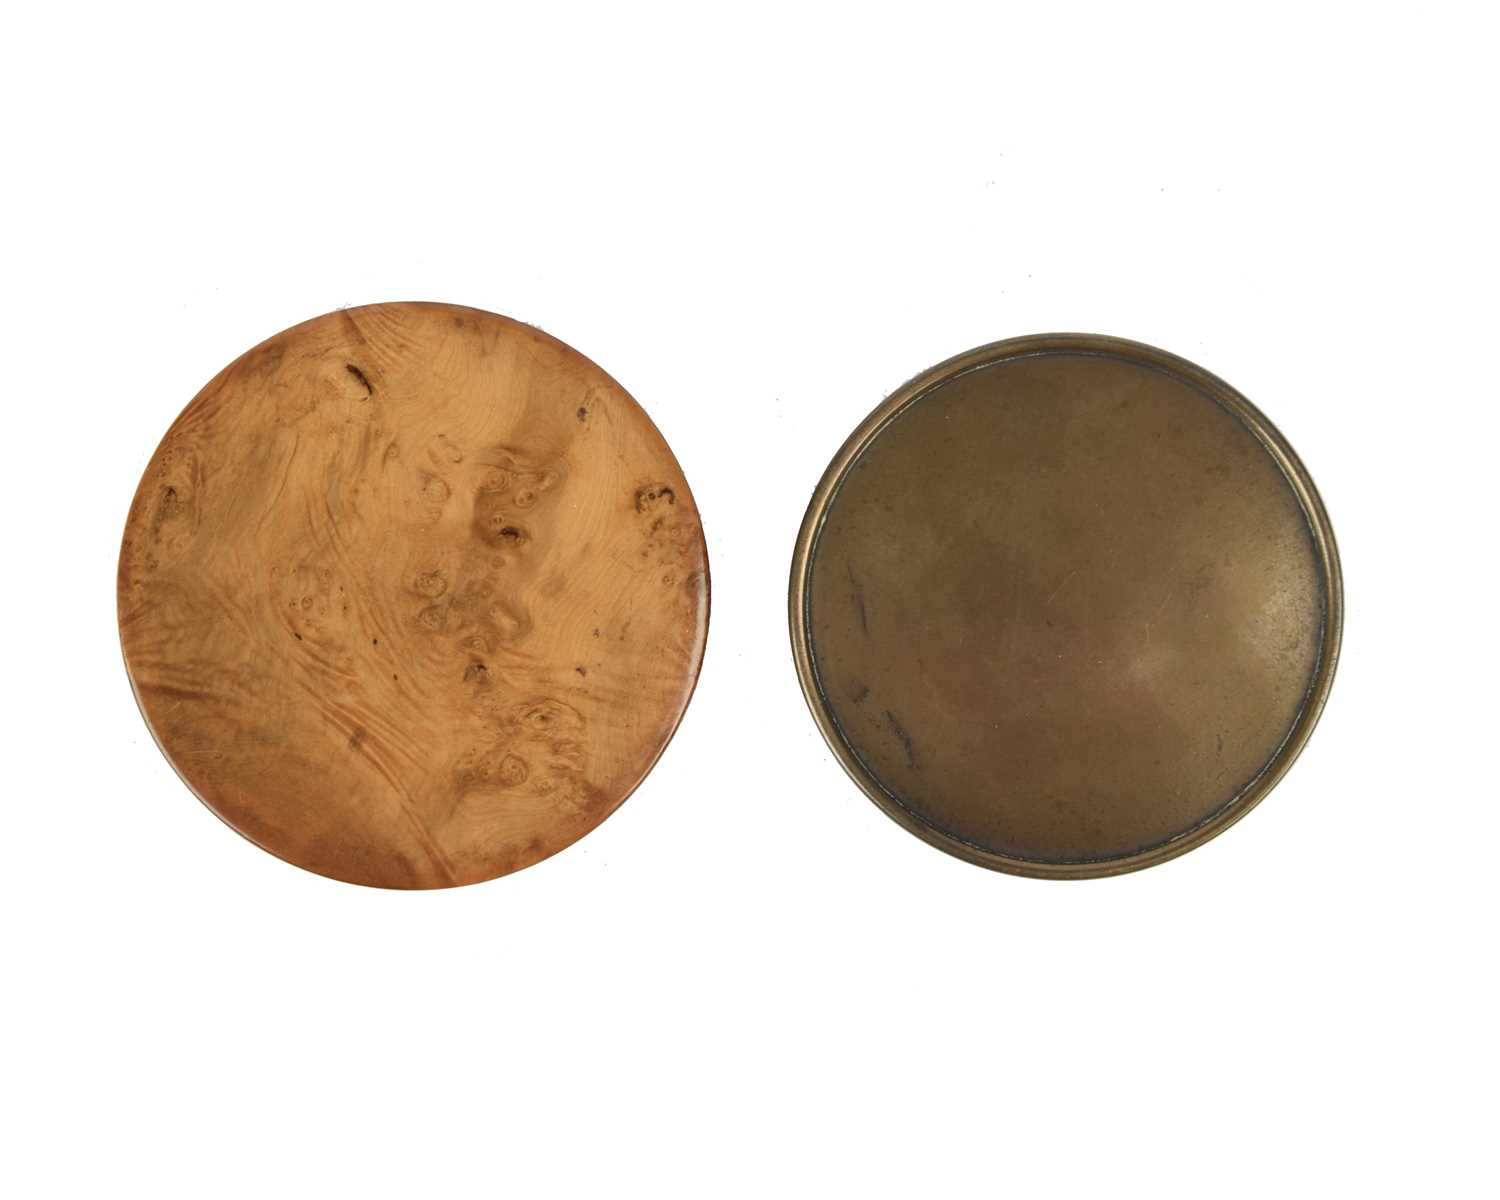 λ Napoleon Bonaparte: a burr wood and tortoiseshell lined circular snuff box, the lid with - Image 2 of 3